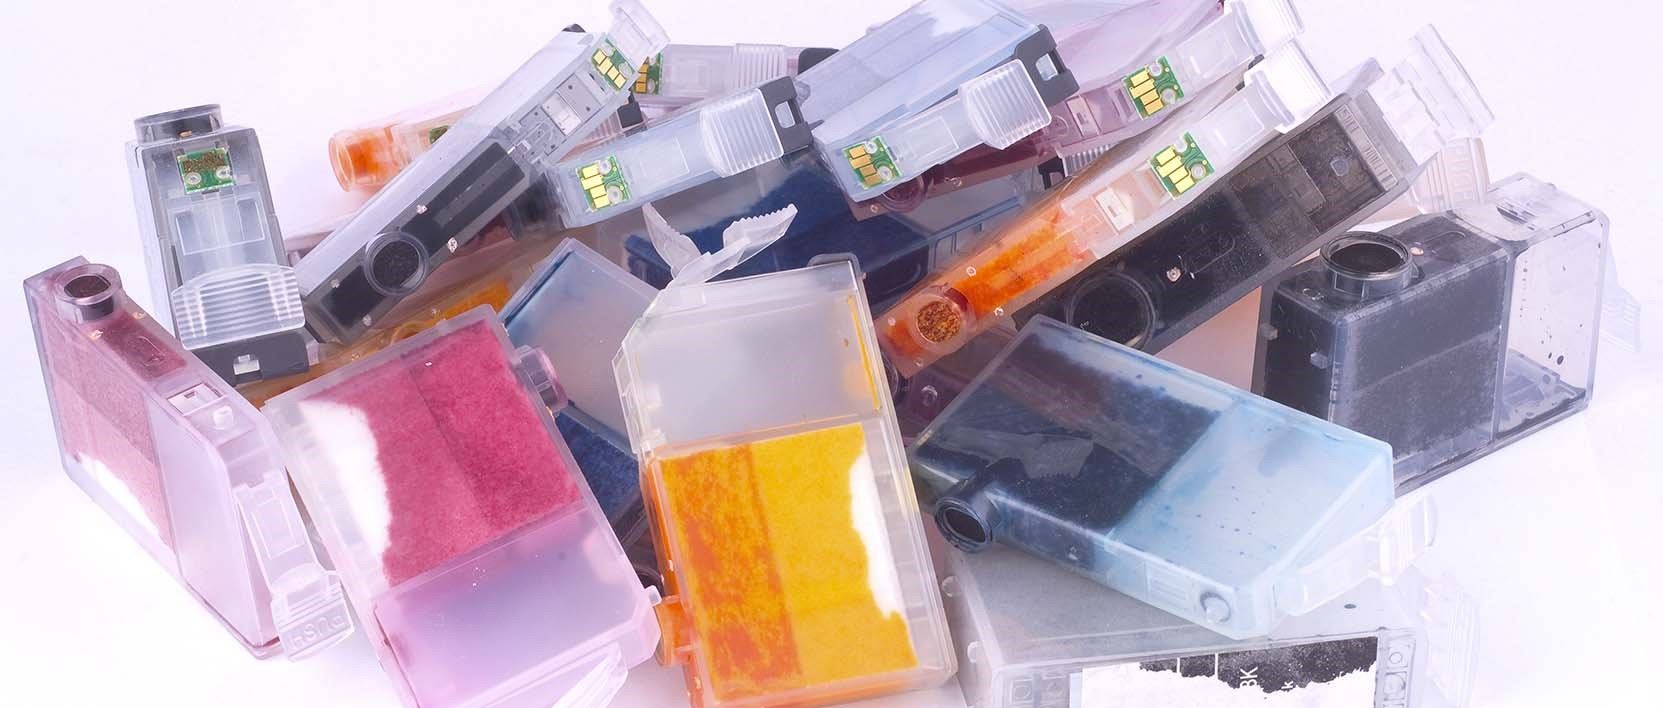 Cartuchos de tinta de impresora de muchos colores para reciclar